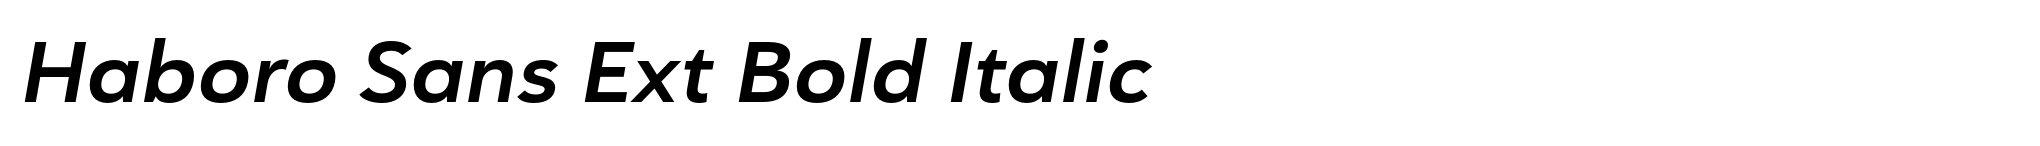 Haboro Sans Ext Bold Italic image